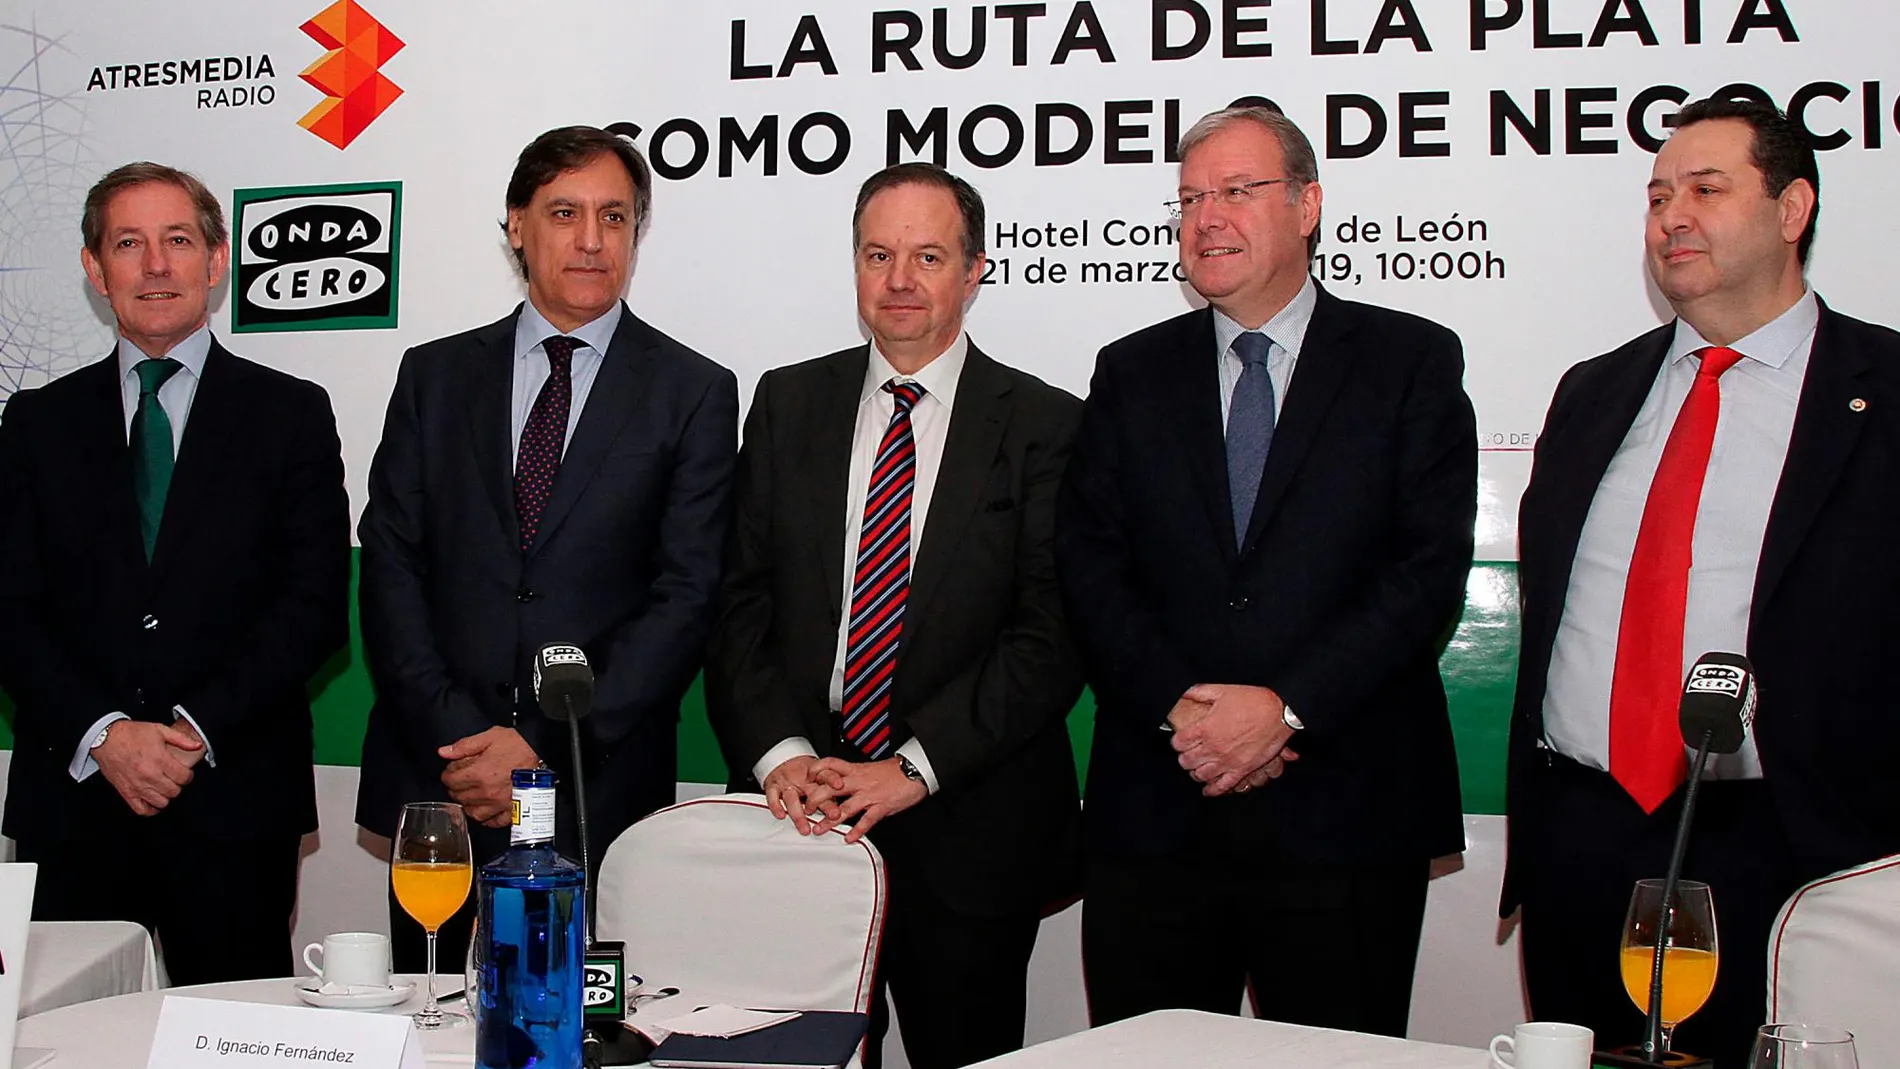 Javier Vega, Carlos García Carbayo, Fernández Sobrino, Antonio Silván y Benjamín Crespo antes de iniciar el coloquio